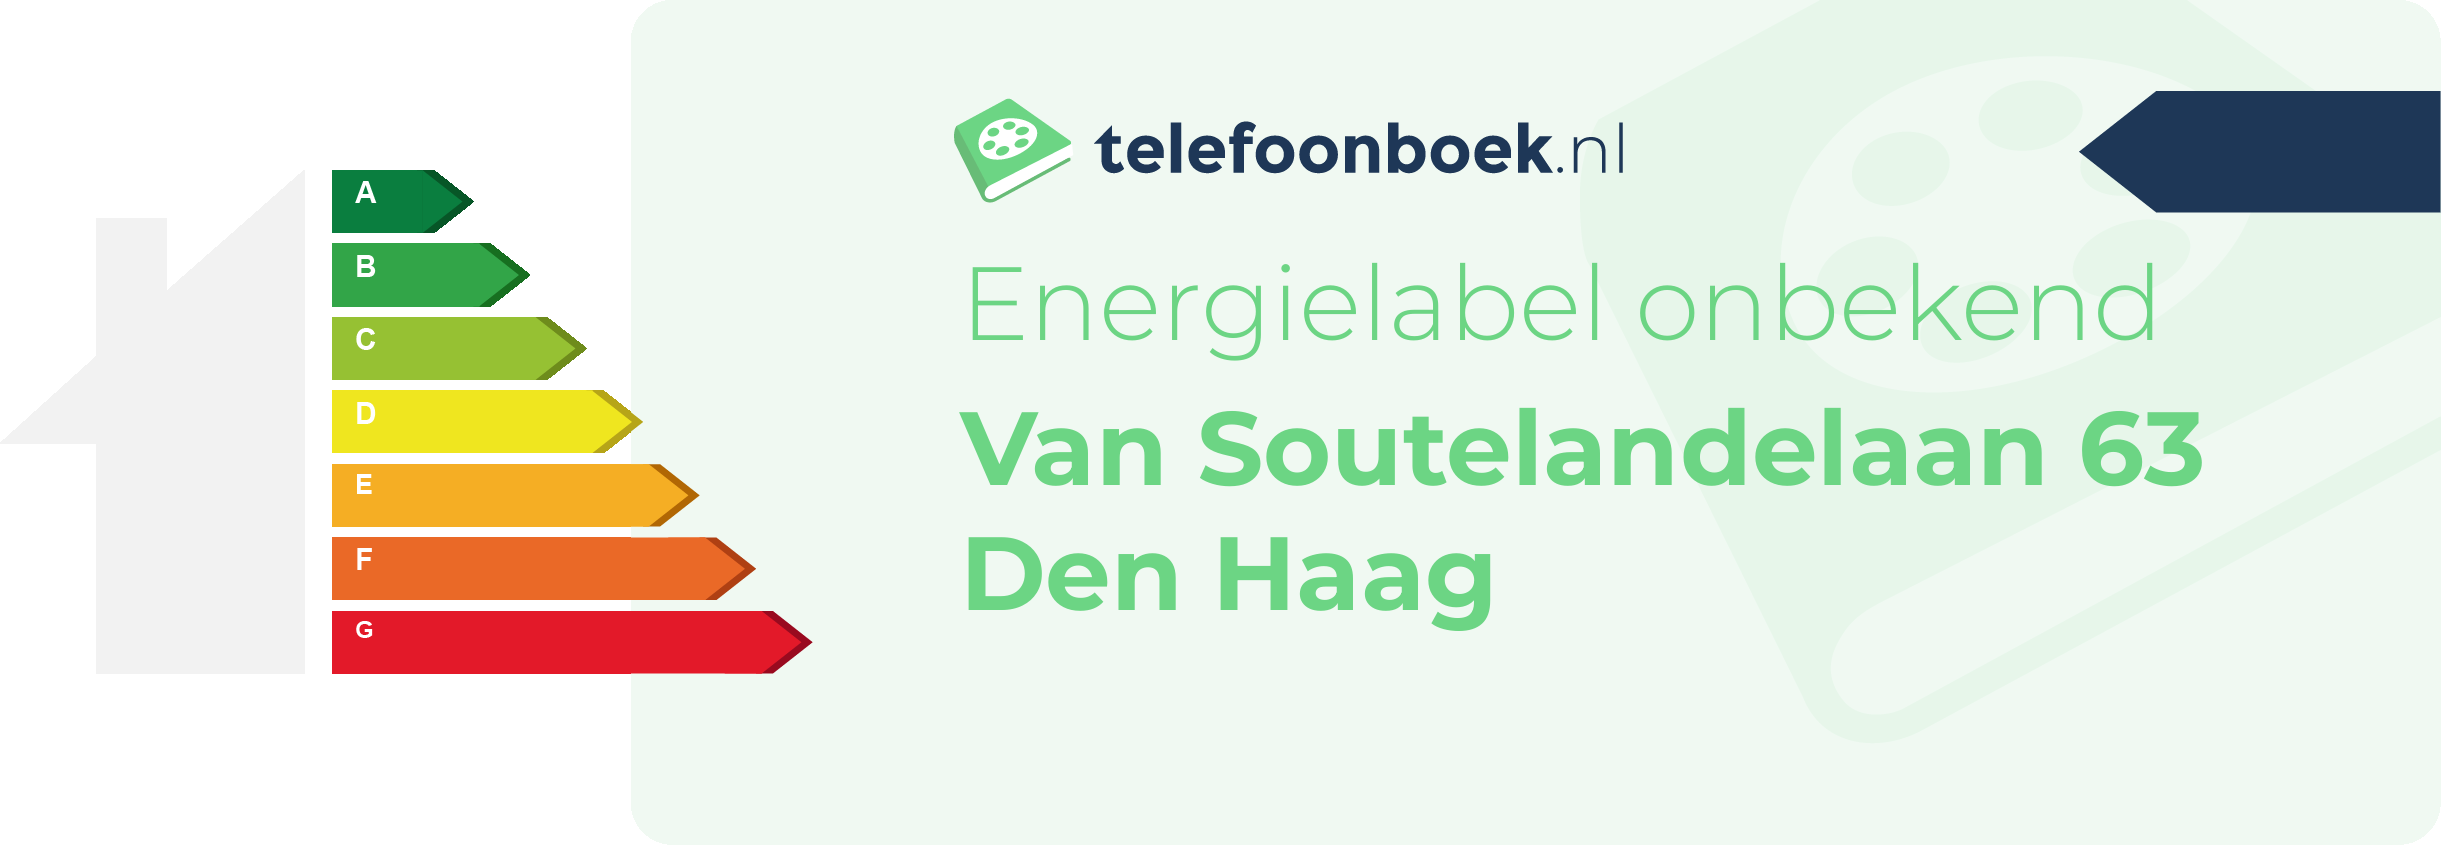 Energielabel Van Soutelandelaan 63 Den Haag